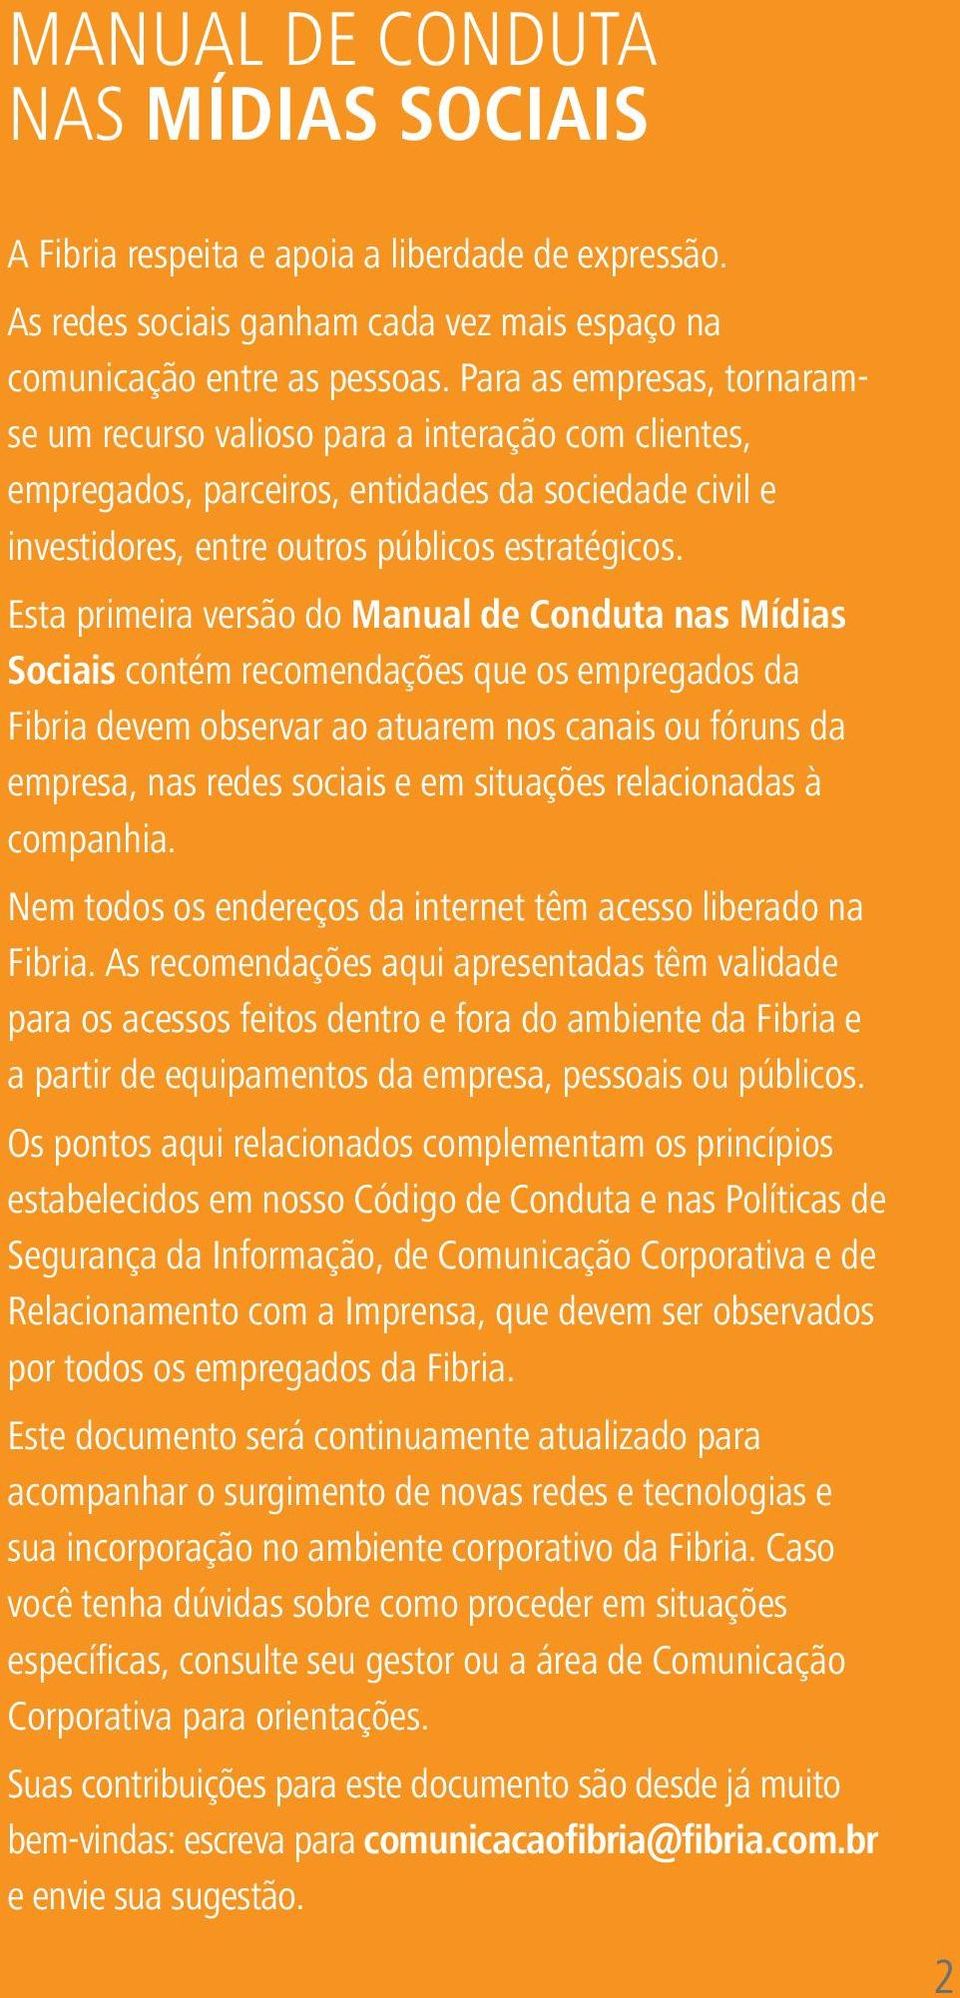 Esta primeira versão do Manual de Conduta nas Mídias Sociais contém recomendações que os empregados da Fibria devem observar ao atuarem nos canais ou fóruns da empresa, nas redes sociais e em